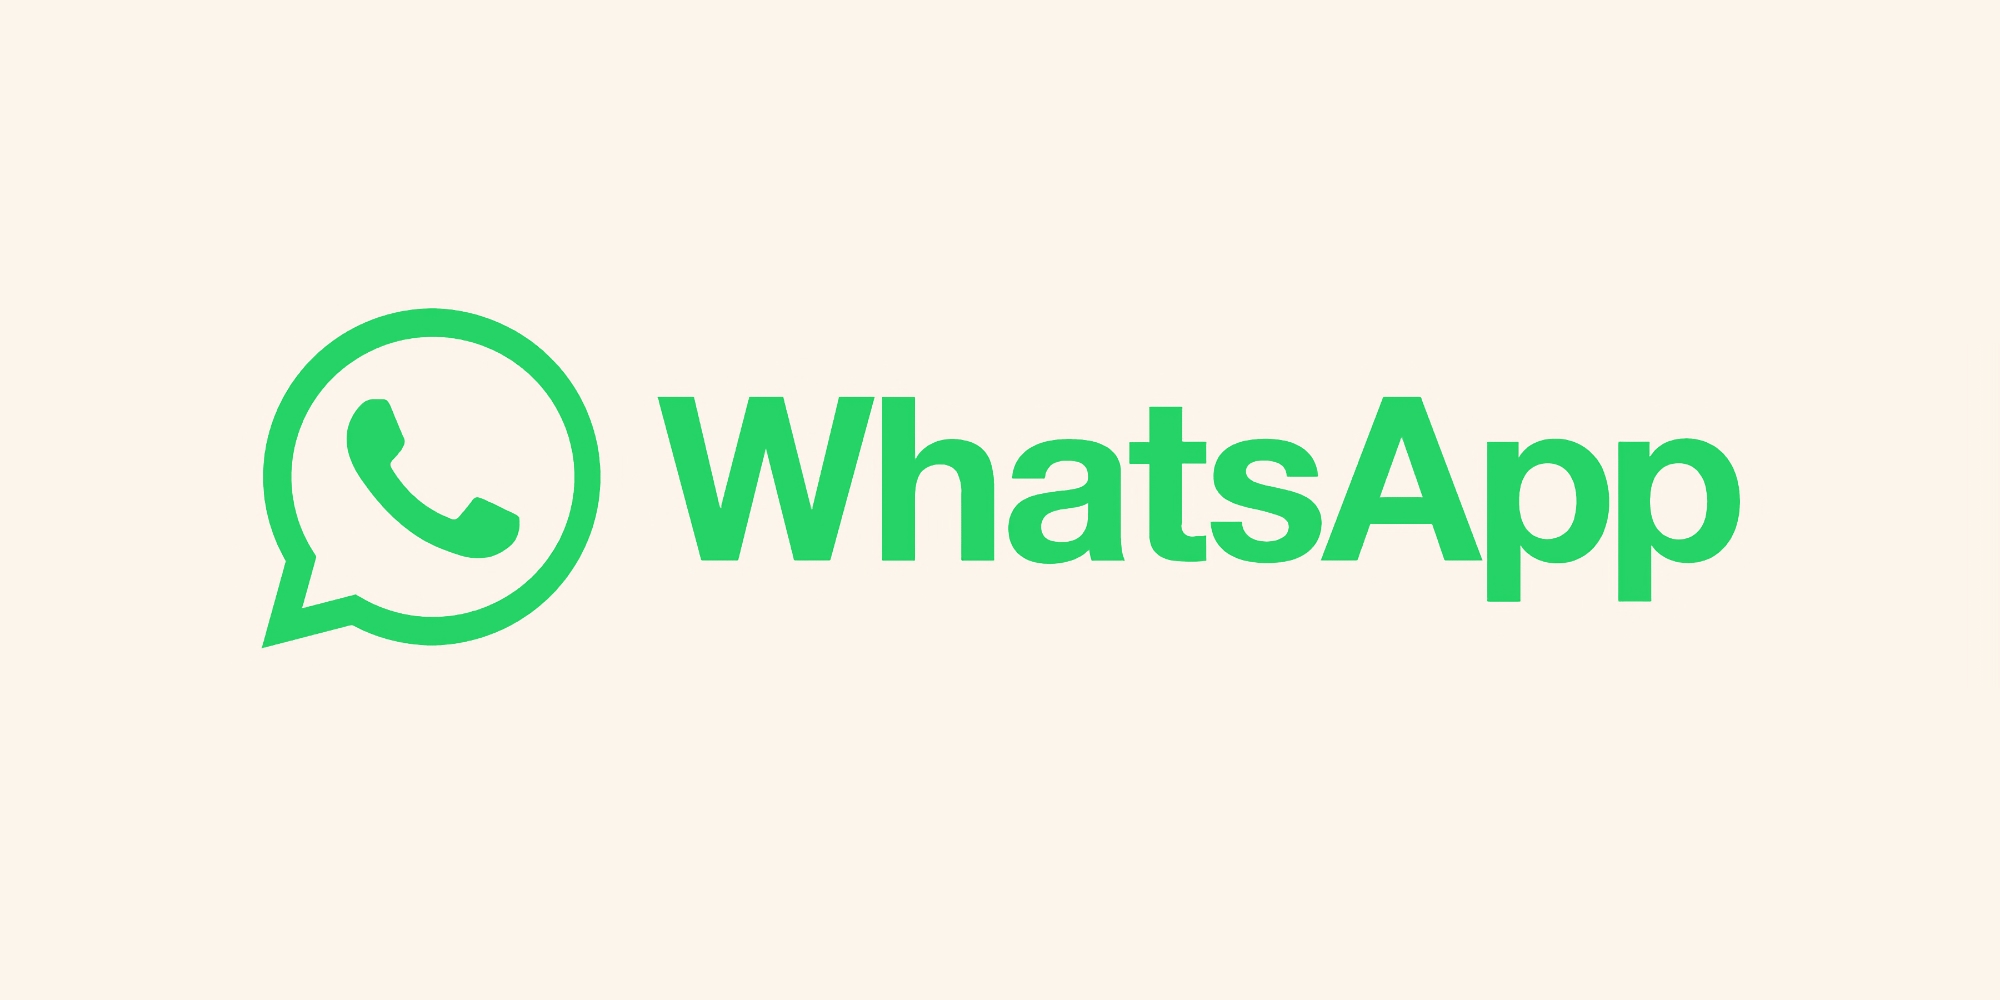 WhatsApp per iPhone ora ha la possibilità di inviare foto e video nella loro qualità originale